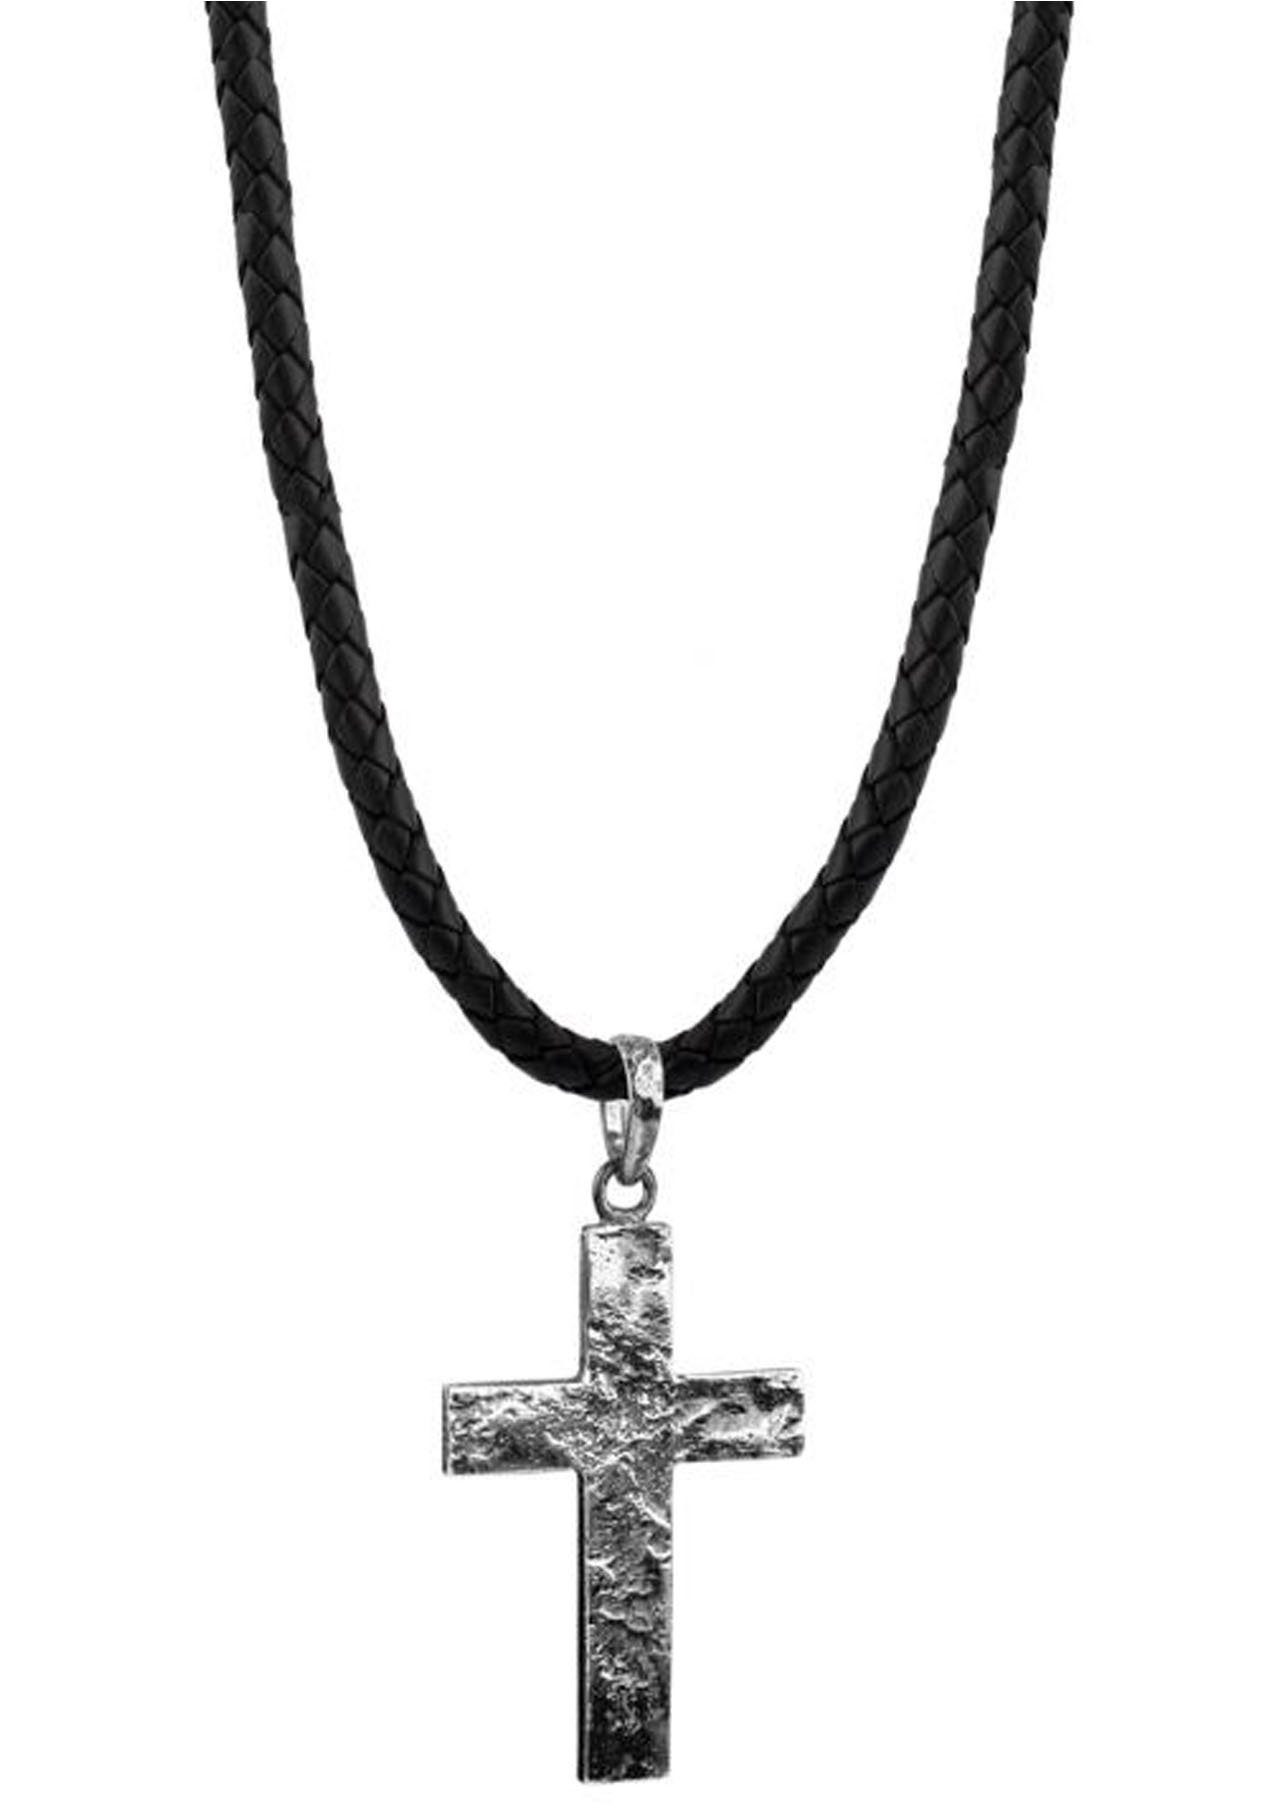 Herren Kette Kreuz  Kreuzkette schwarz rot neu Halskette Lederkette Herrenkette 